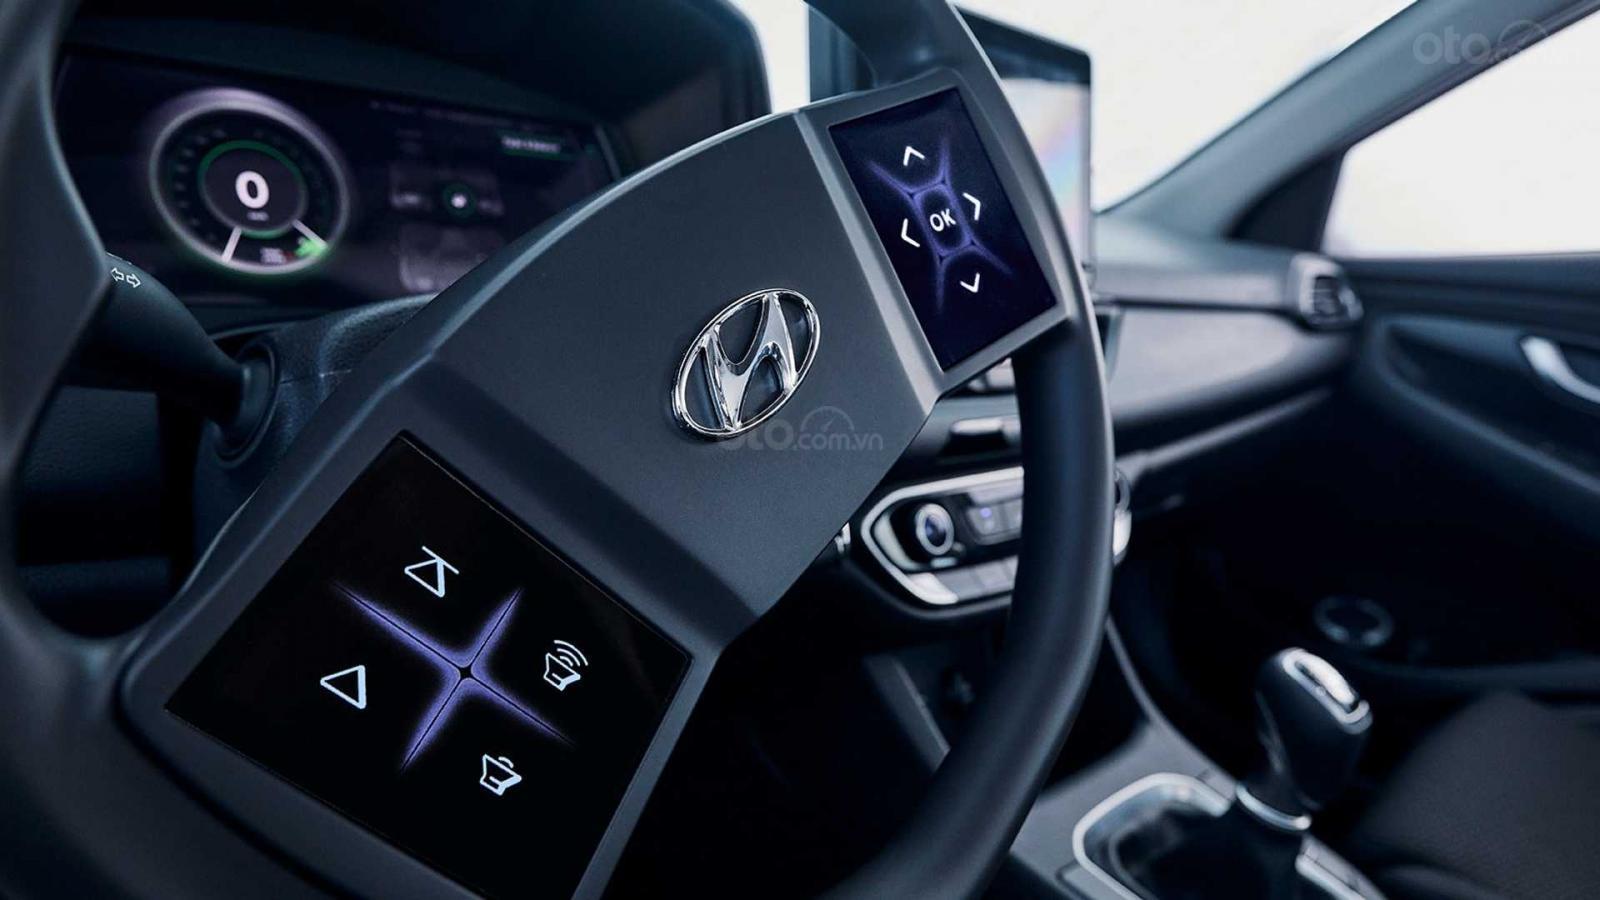 Hyundai giới thiệu ý tưởng vô-lăng tích hợp màn hình cảm ứng